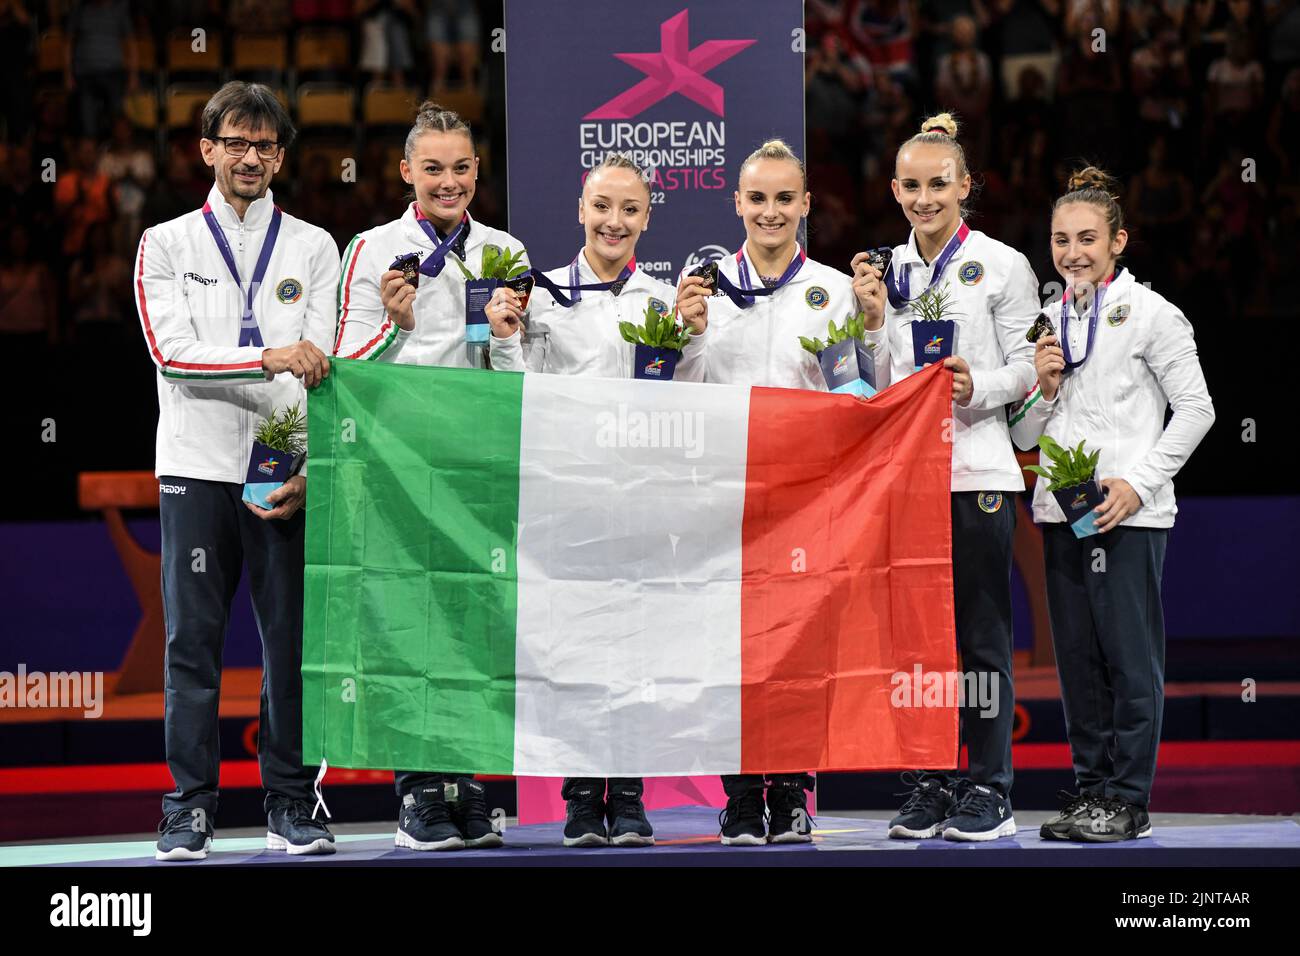 European Championships Munich 2022: Artistic Gymnastics, Women's Team Finals: Italy (gold medal). Angela Andreoli, Alice D'Amato, Asia D'Amato, Martina Maggio, Giorgia Villa Stock Photo